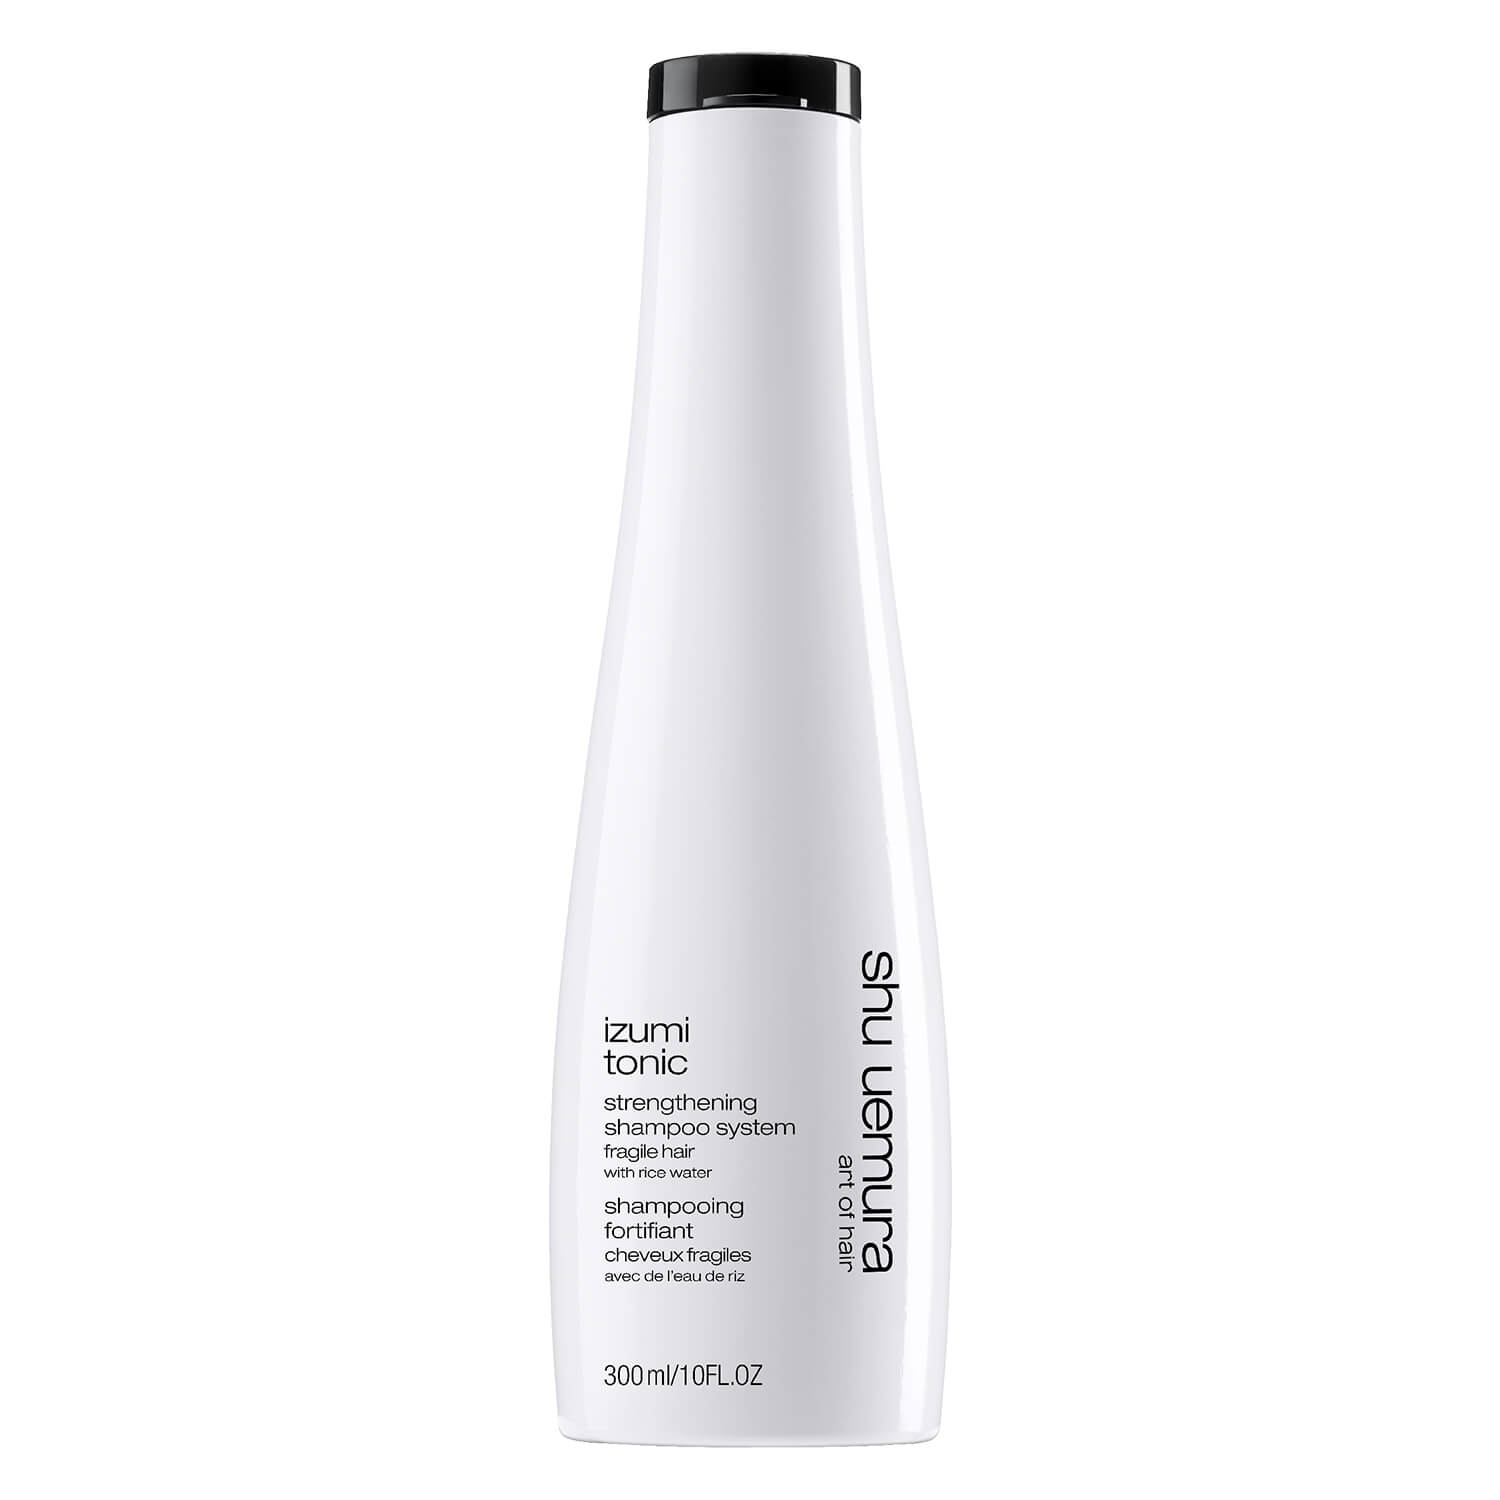 Produktbild von Izumi Tonic - Strengthening Shampoo